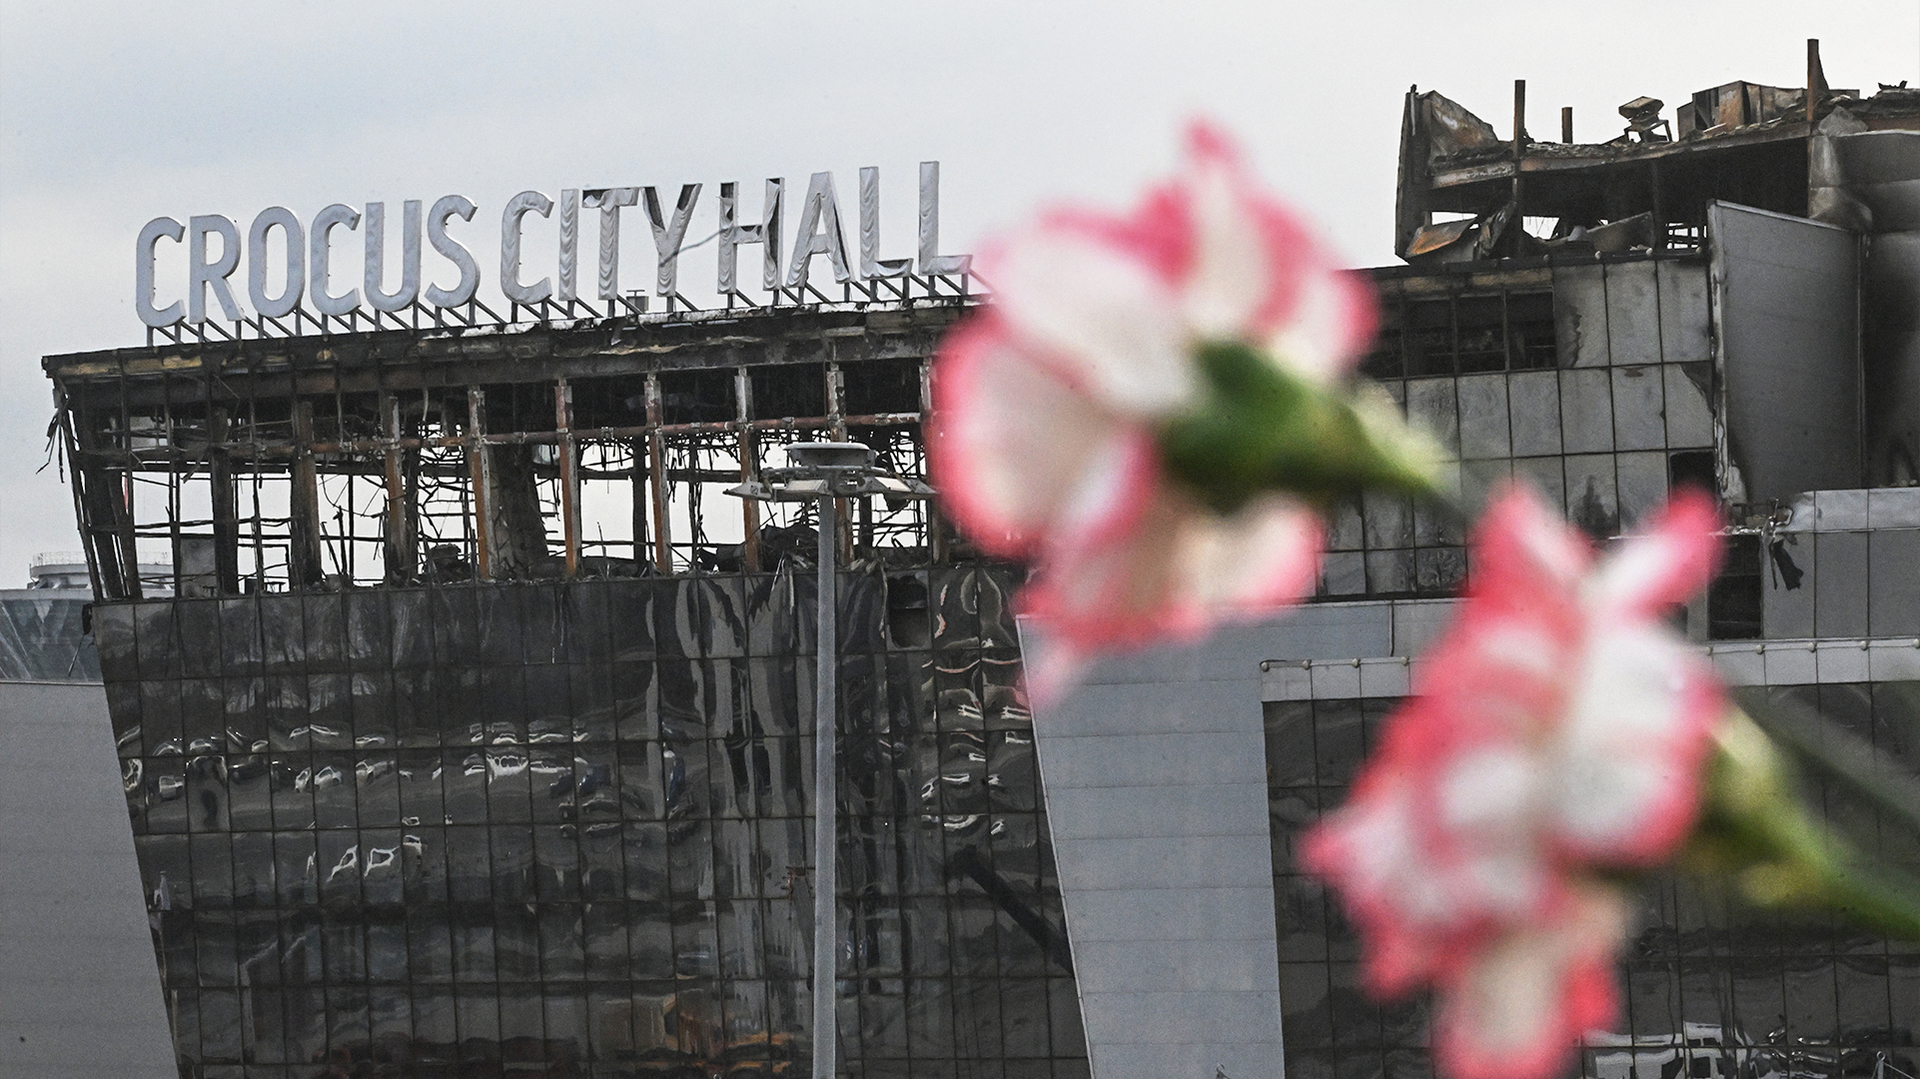 134 mortos no ataque terrorista ao Crocus City Hall foram identificados